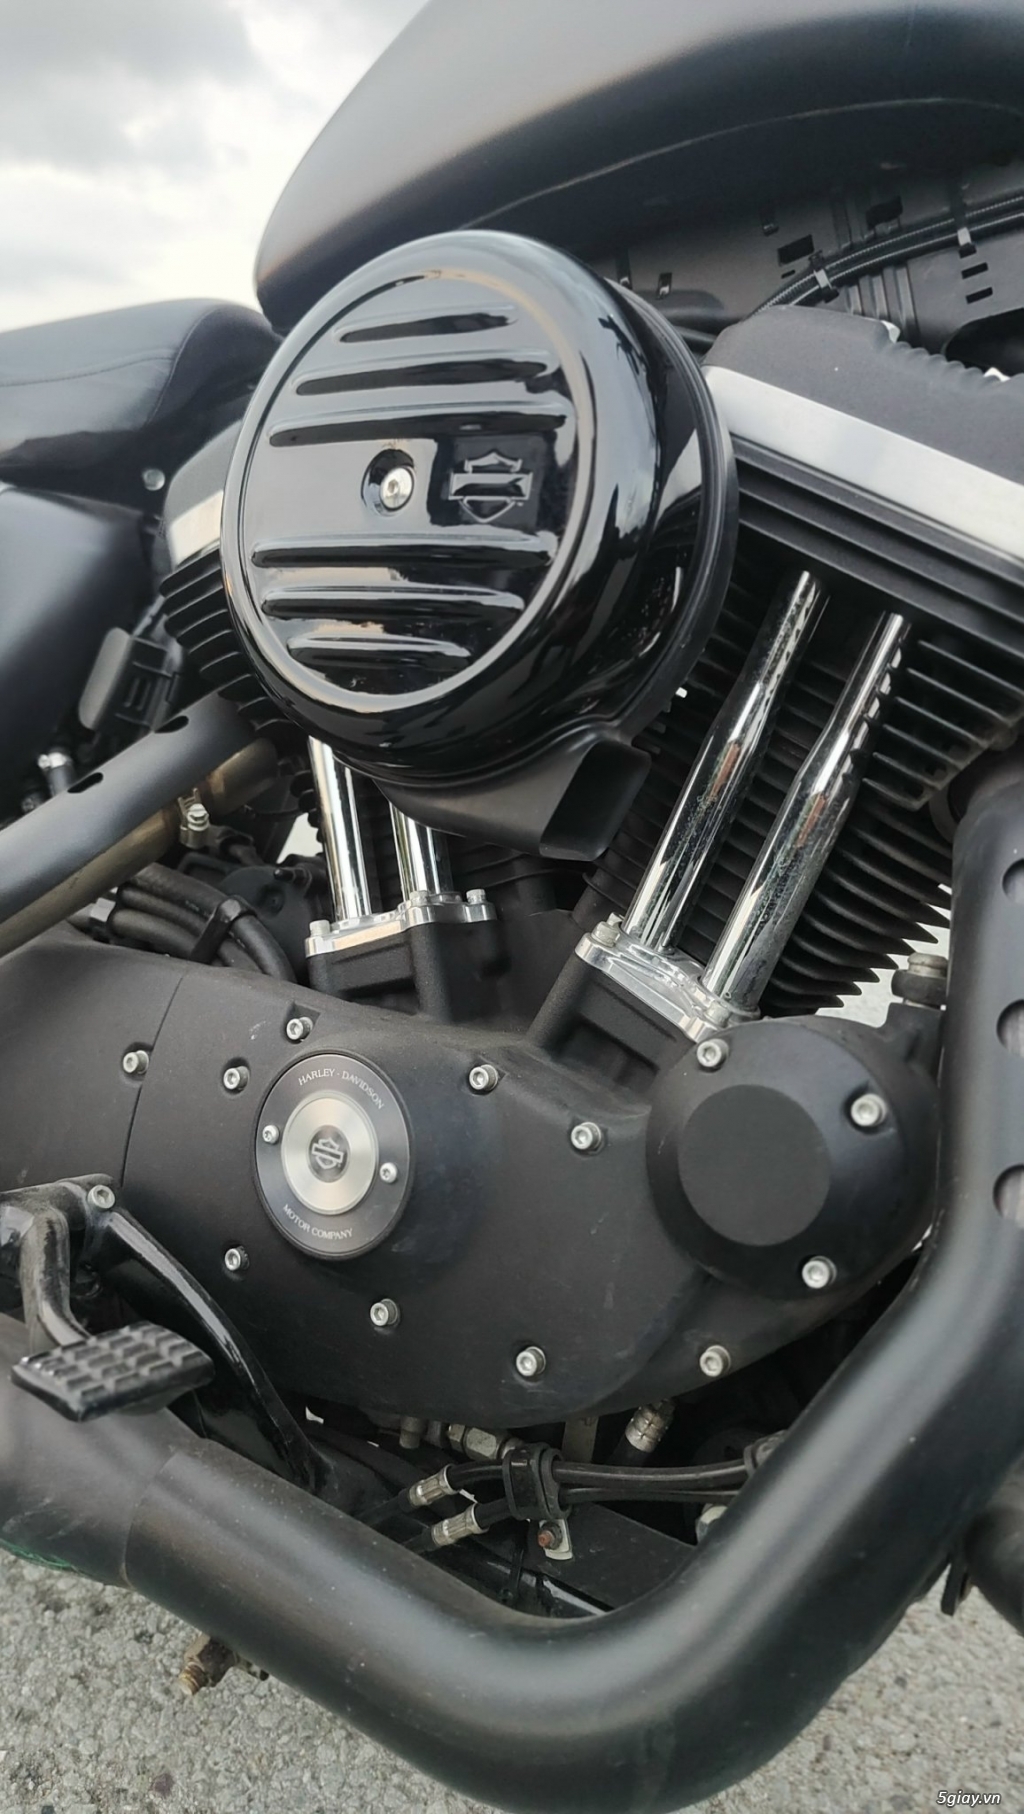 Bán Harley Davidson - Iron 883 năm 2019 Xe ngay chủ đứng tên - 3